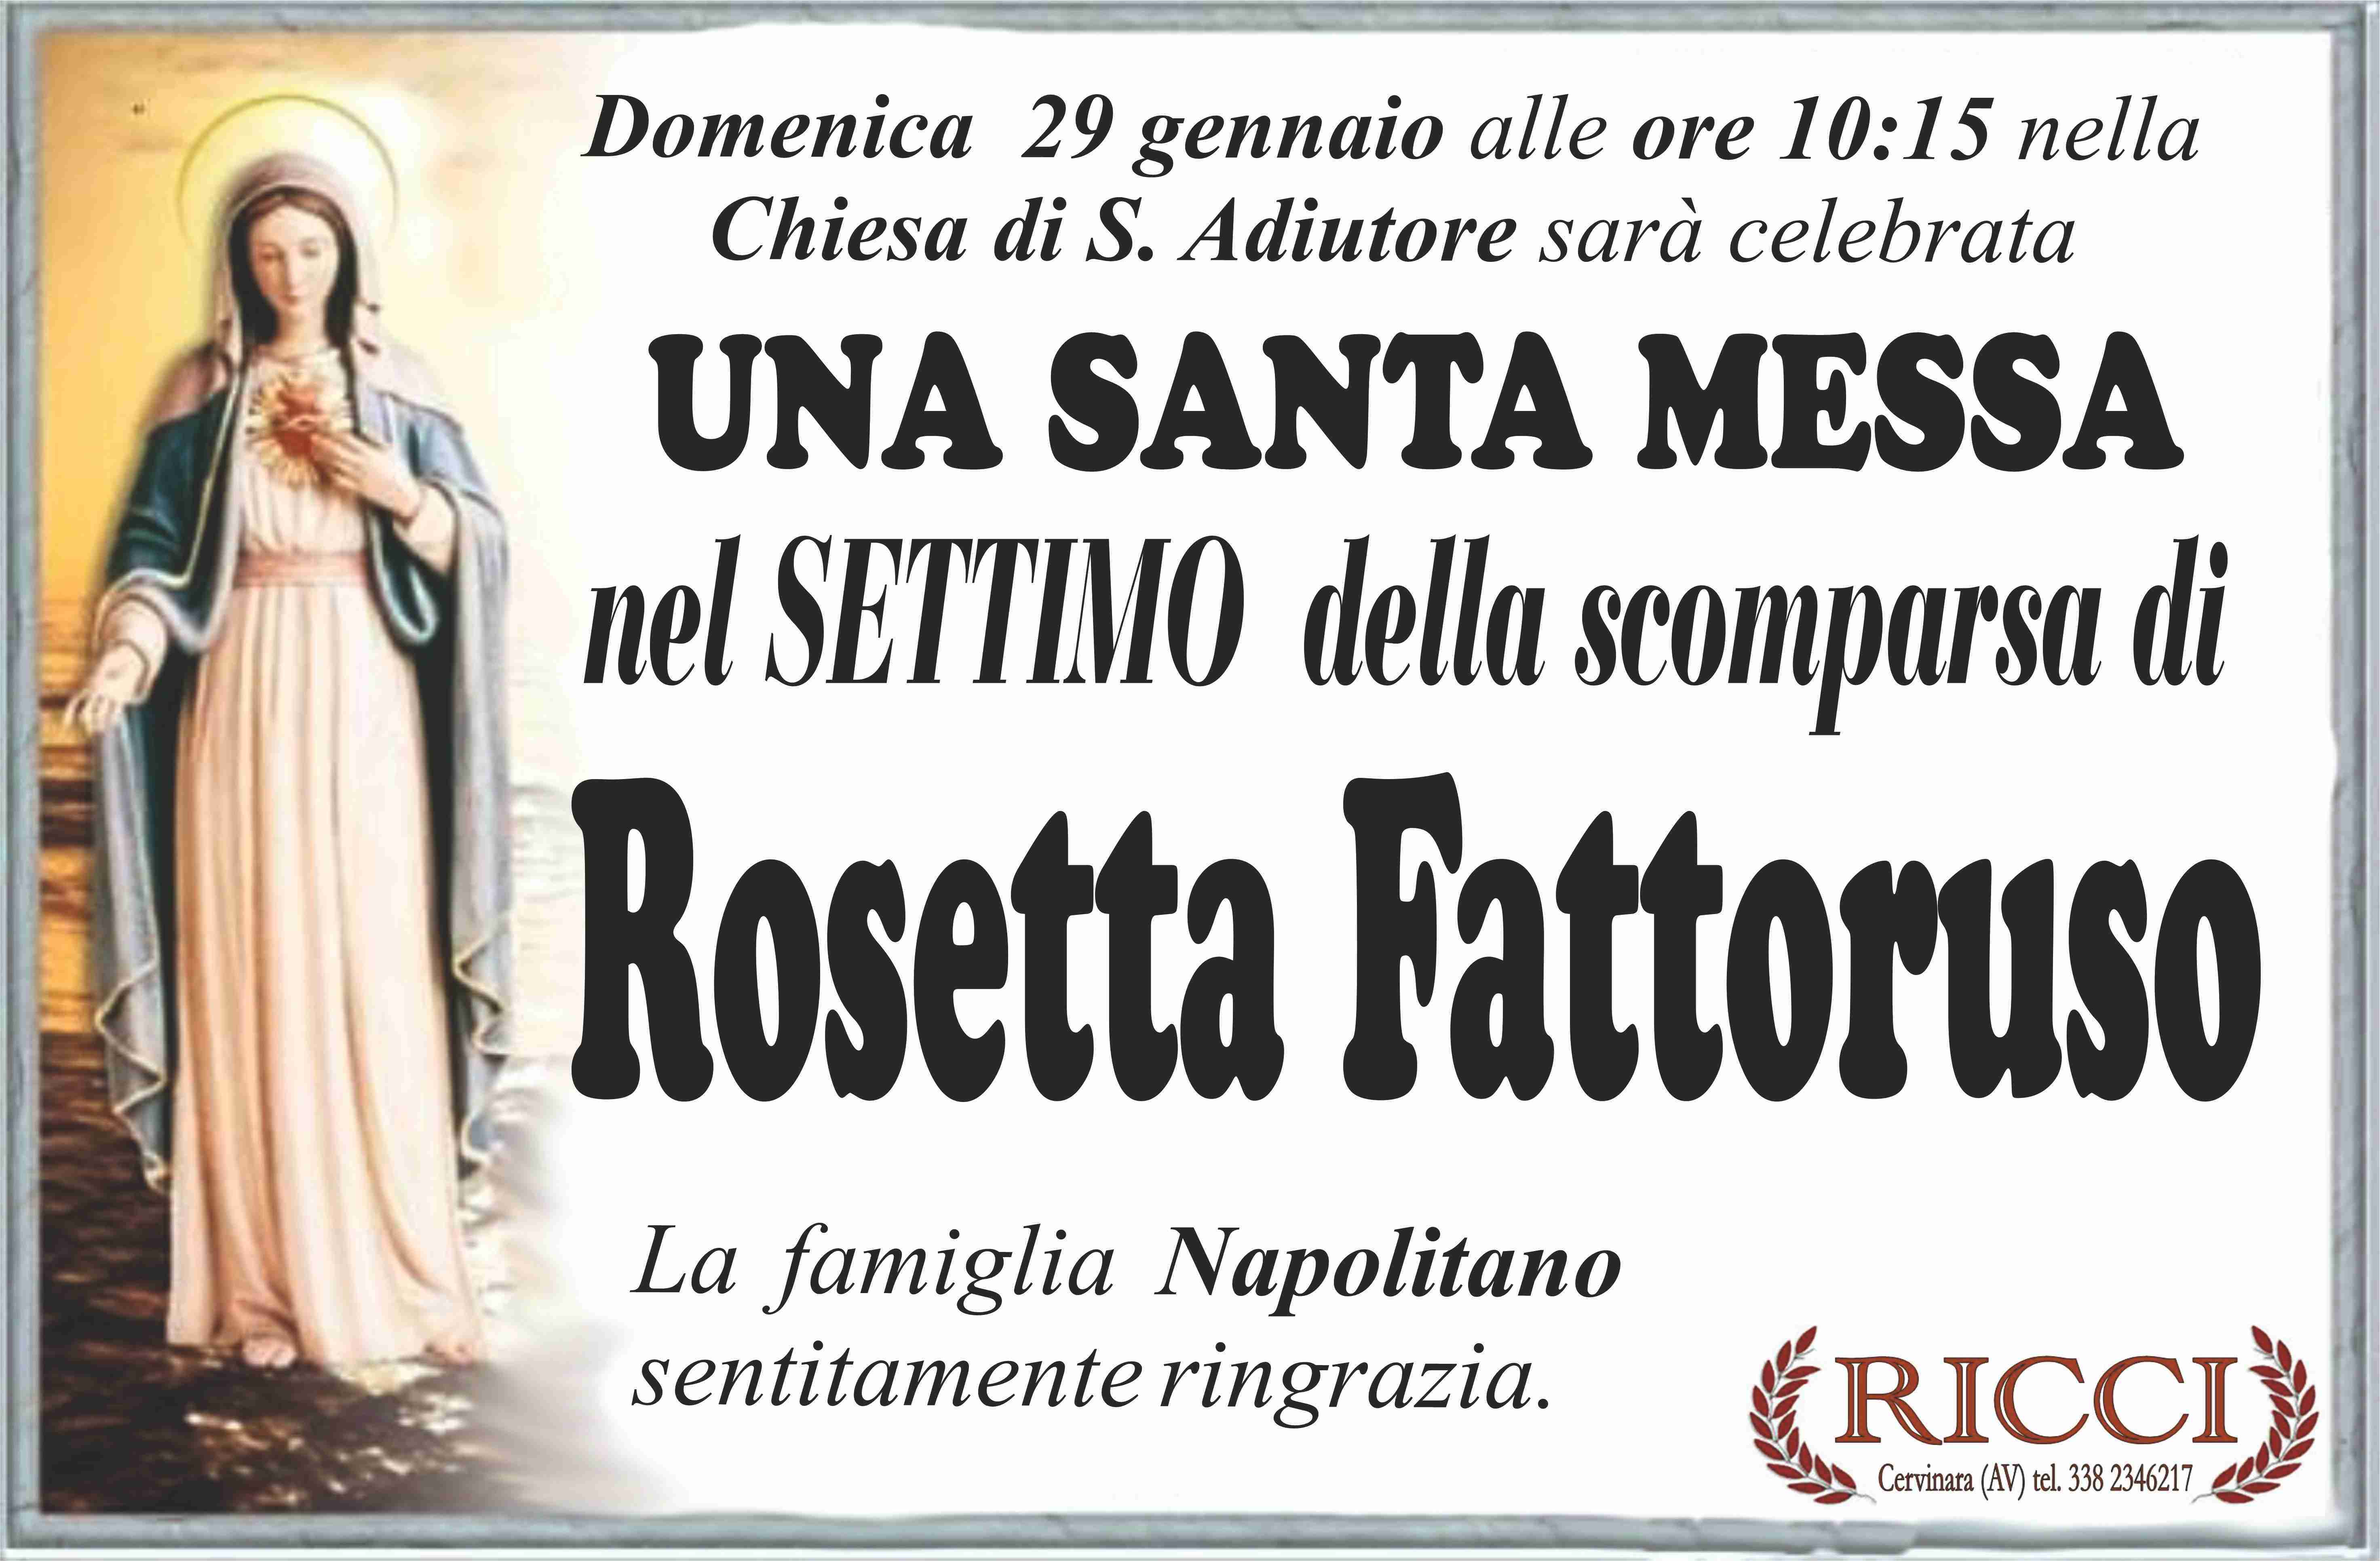 Rosetta Fattoruso